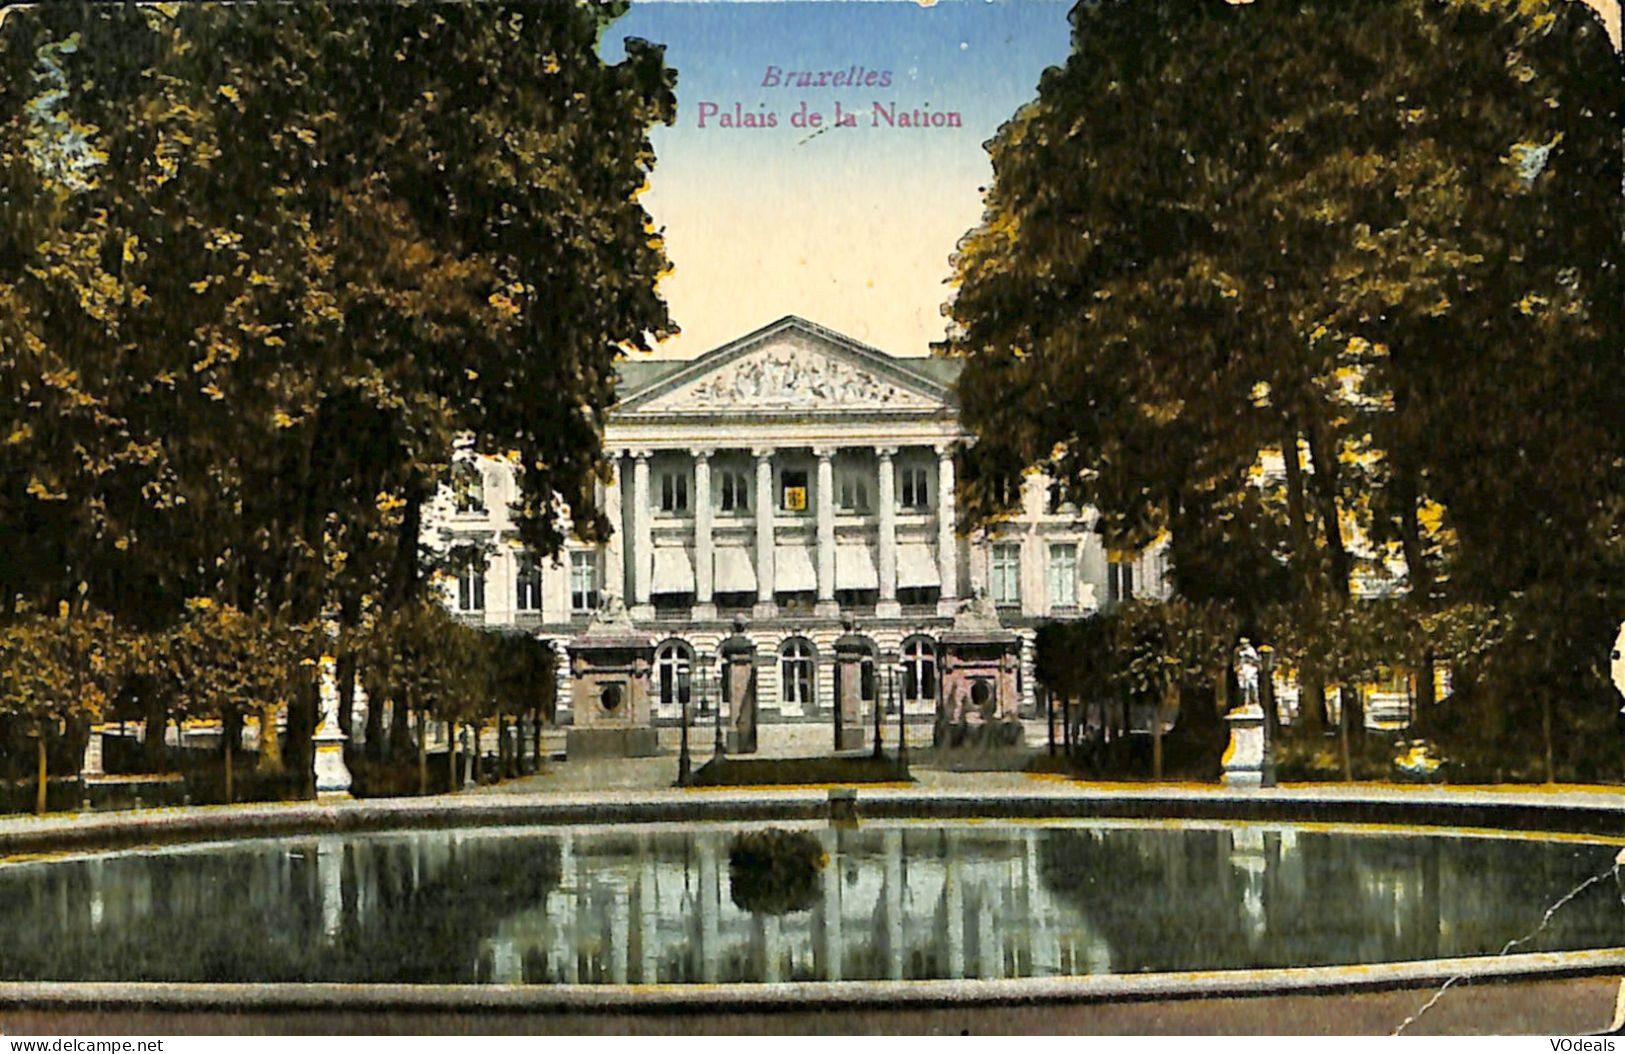 Belgique - Brussel - Bruxelles - Palais De La Nation - Monuments, édifices